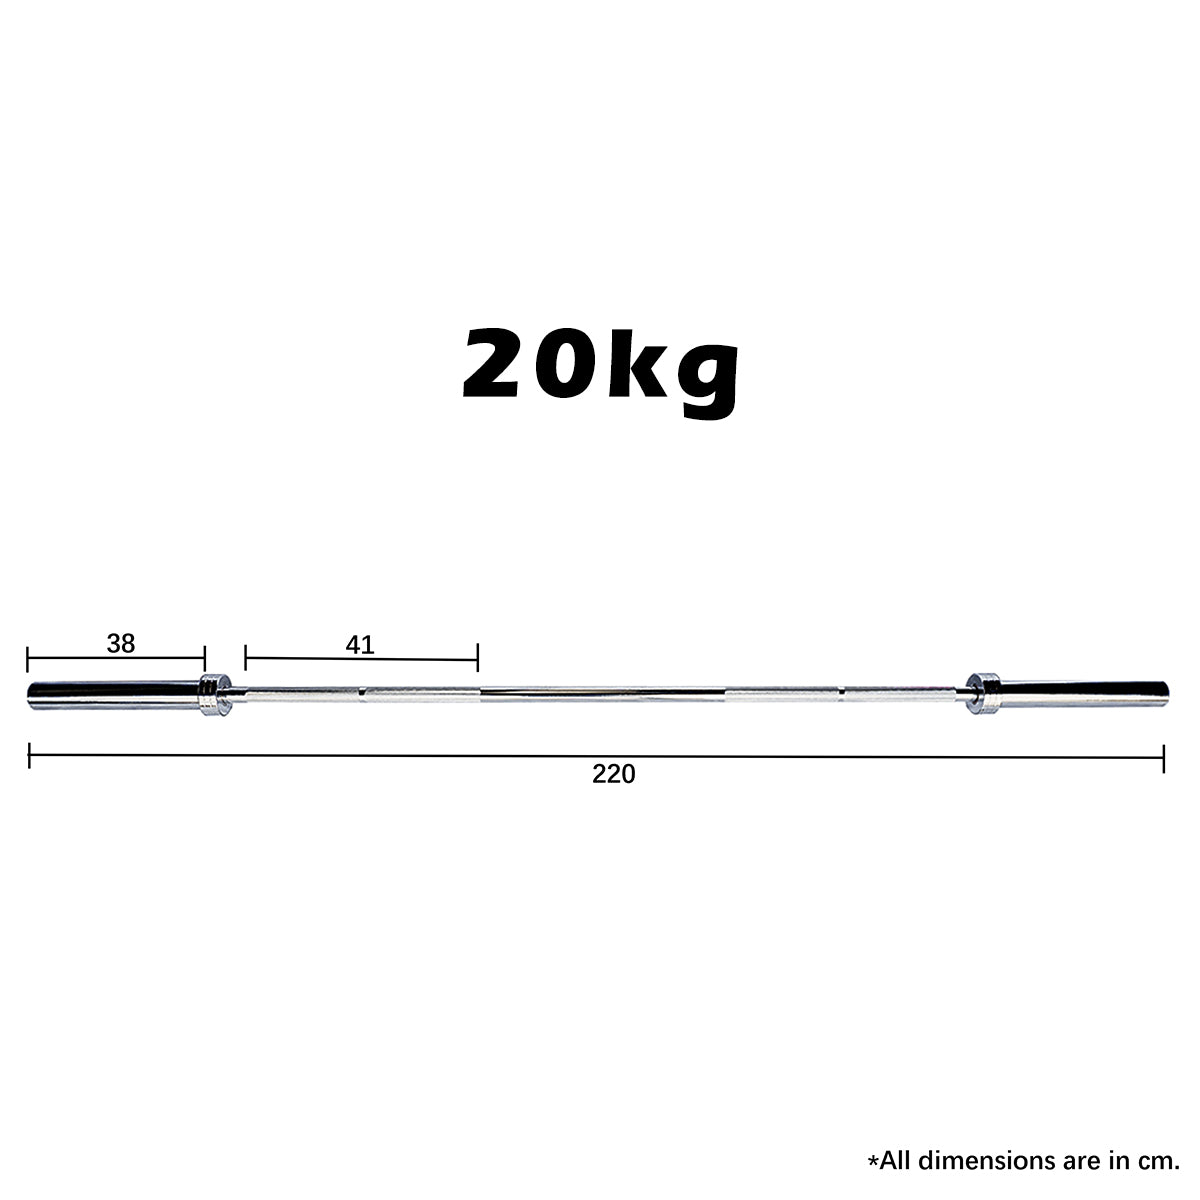 20kg olympic bar dimension